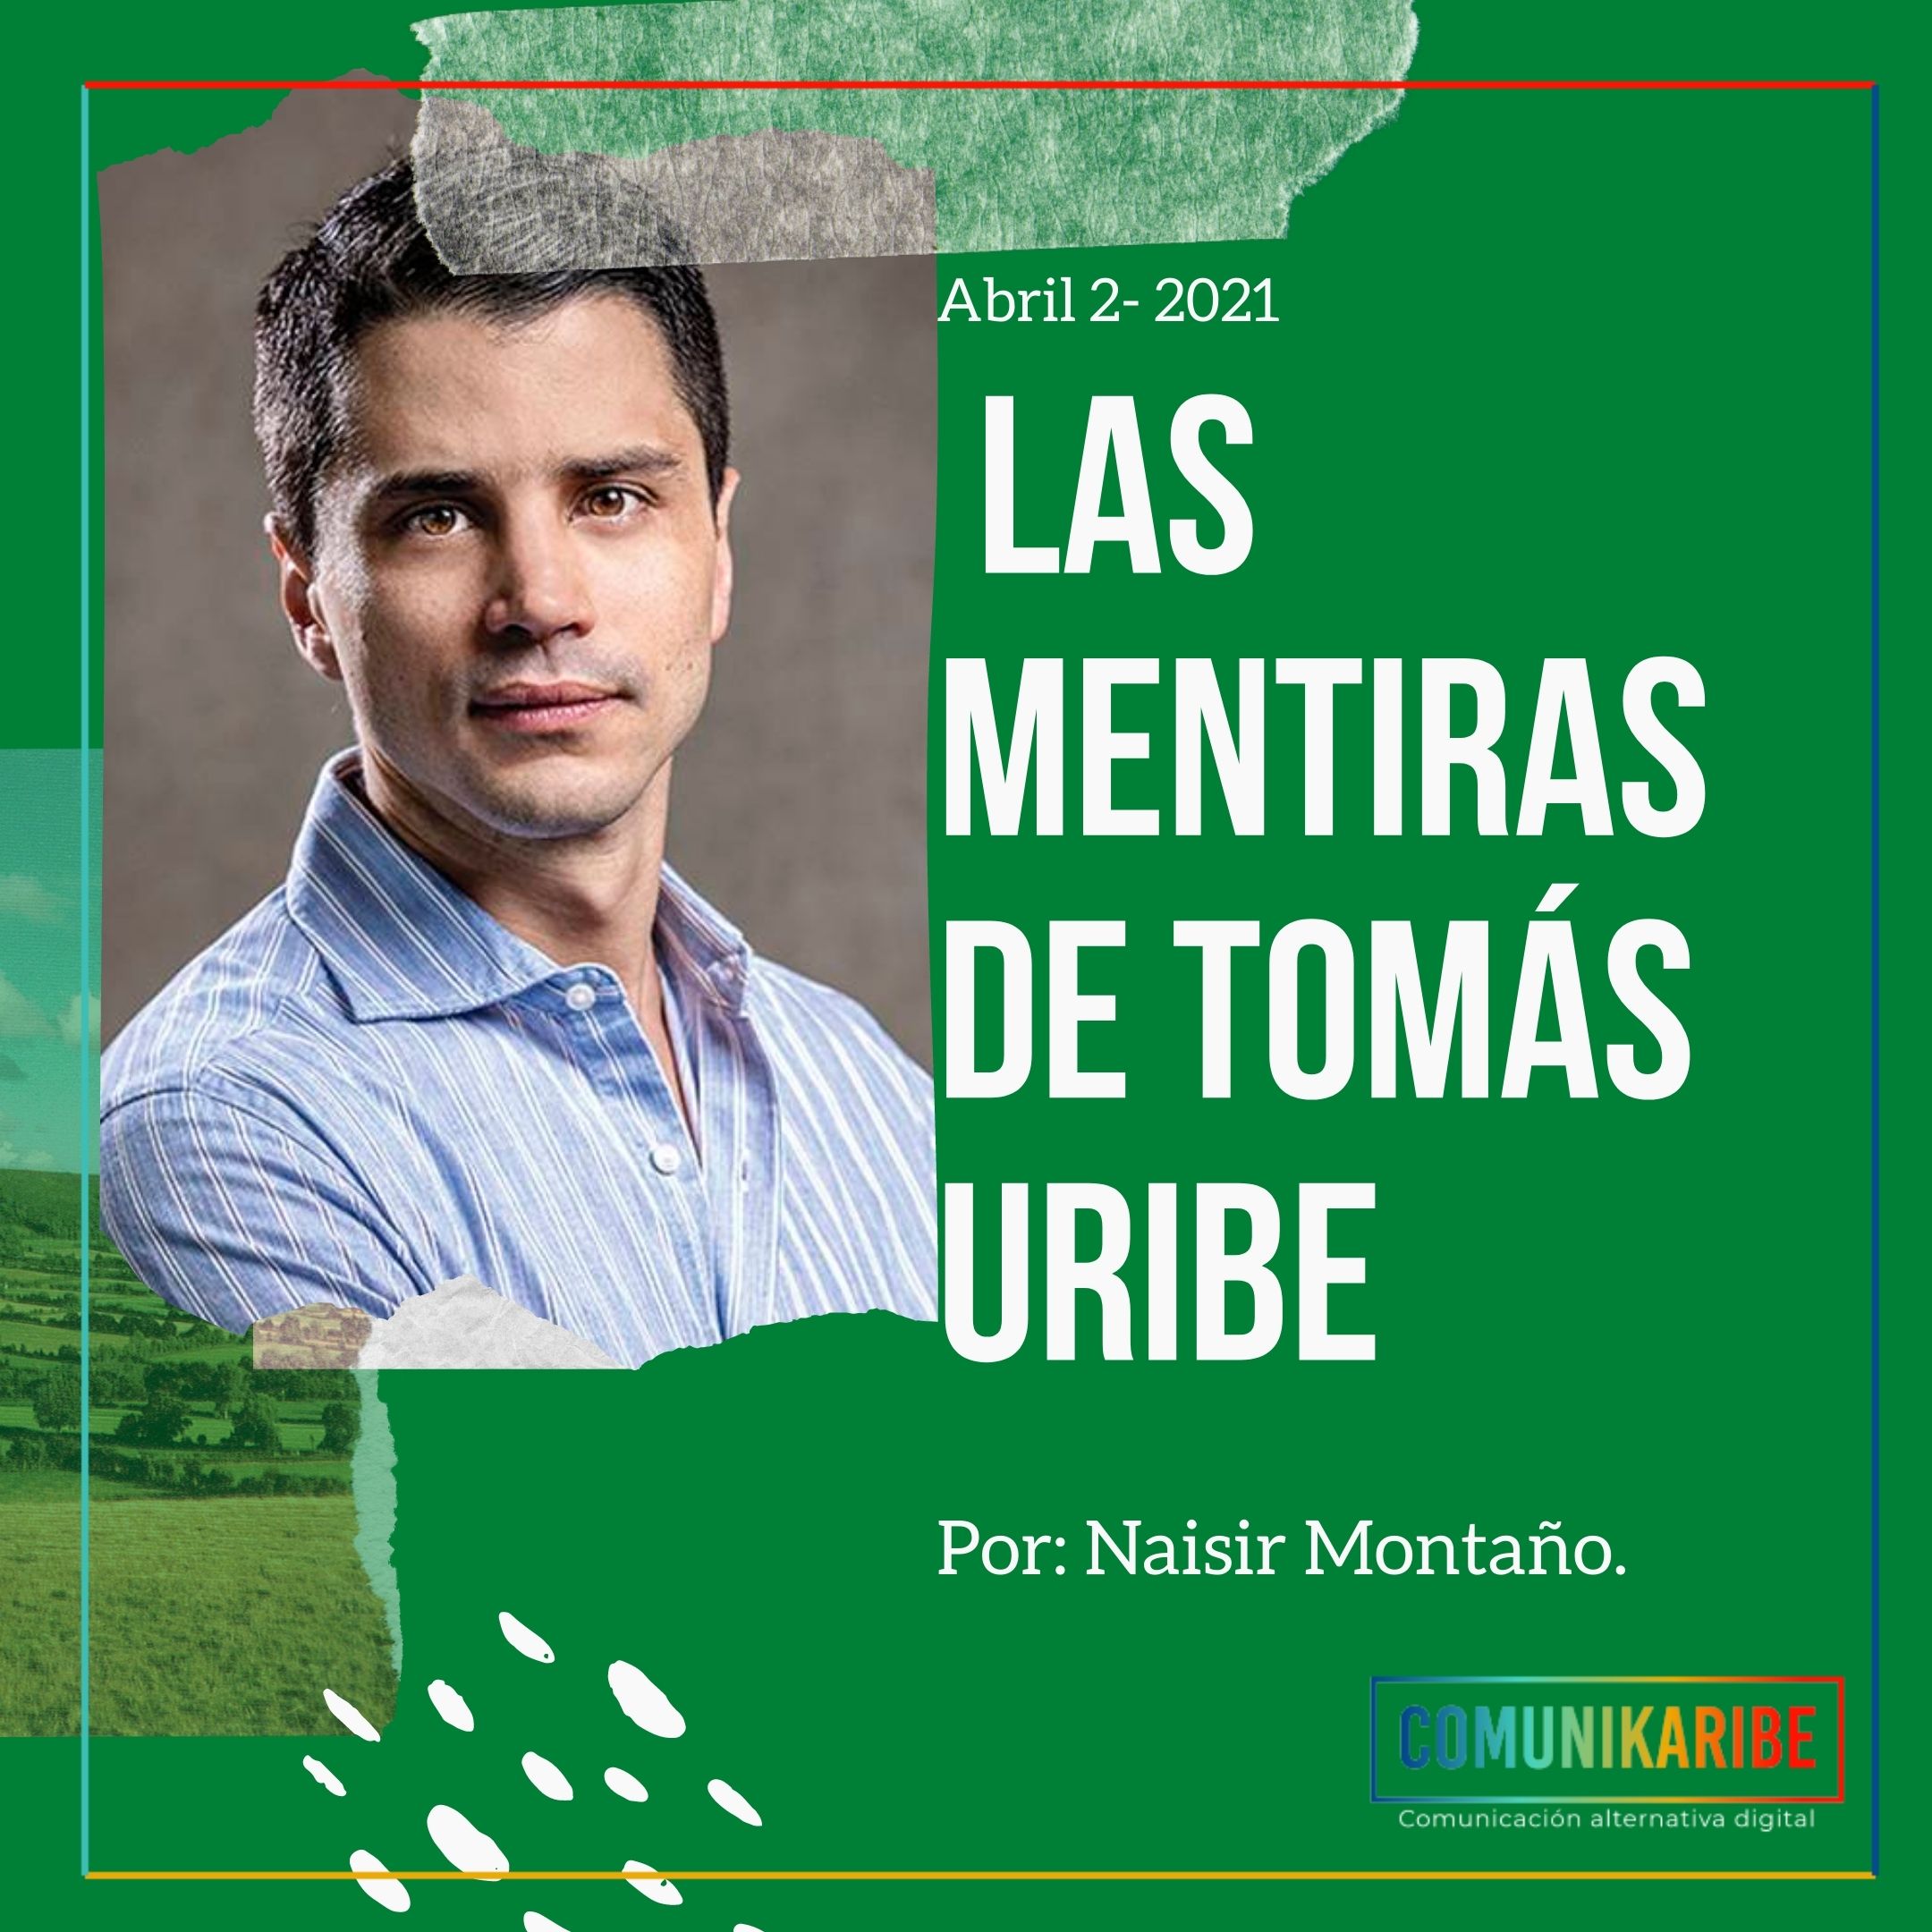 Las mentiras de Tomás Uribe